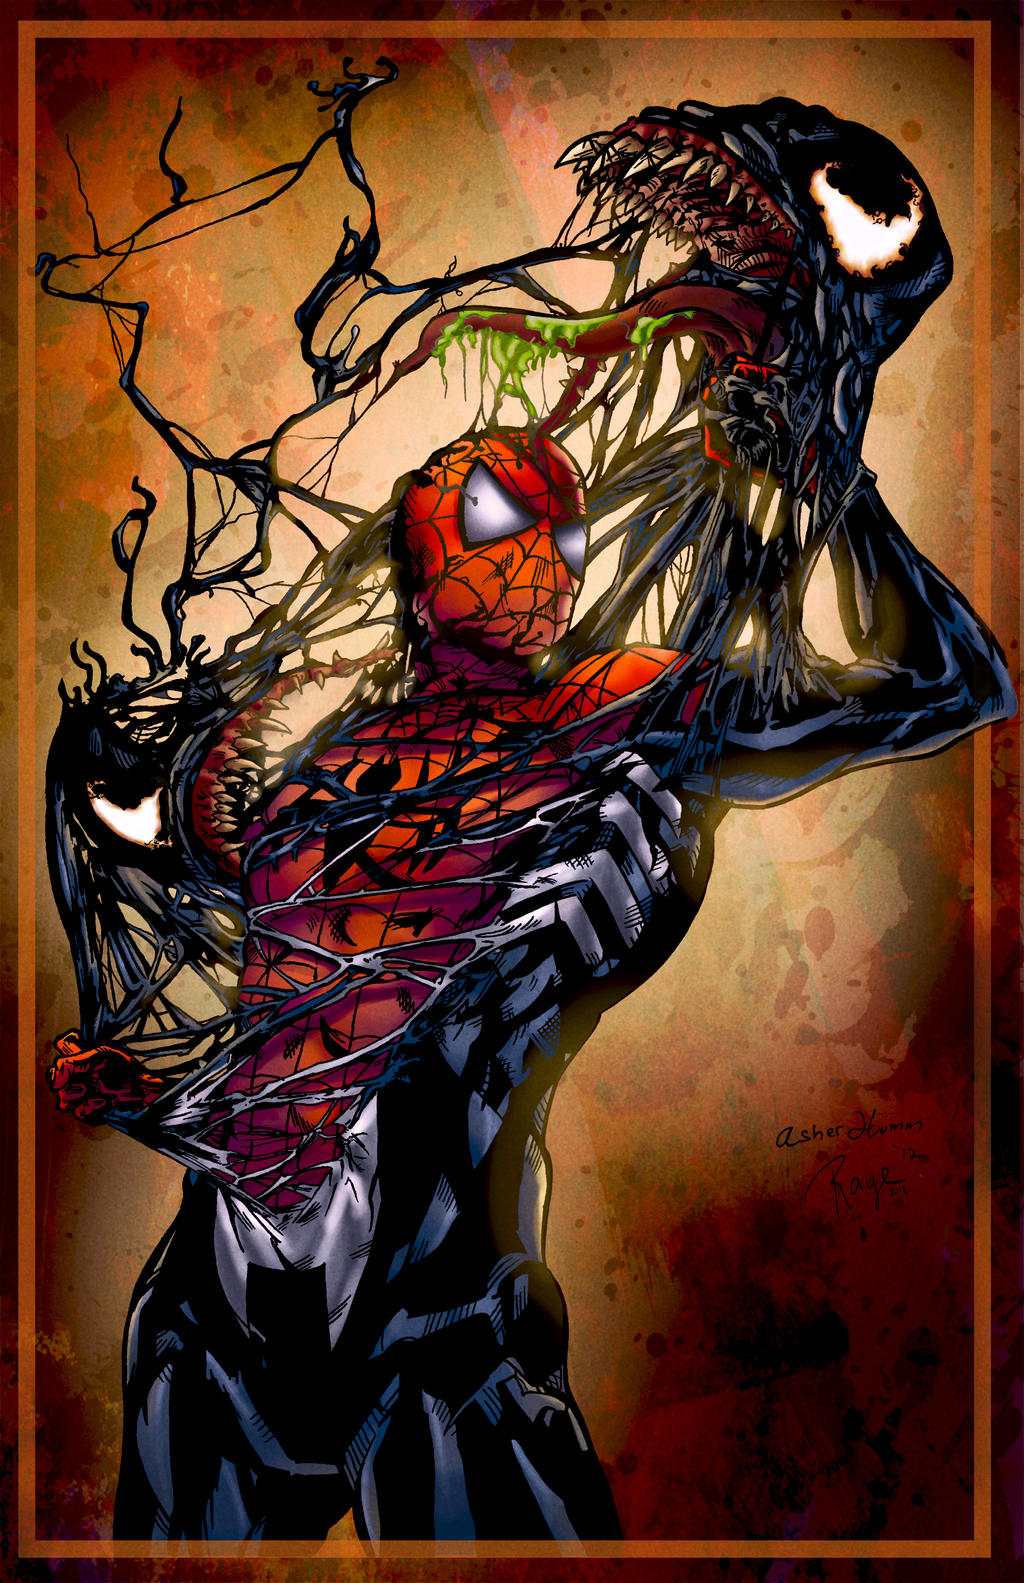 Spiderman vs. Venom - Colored